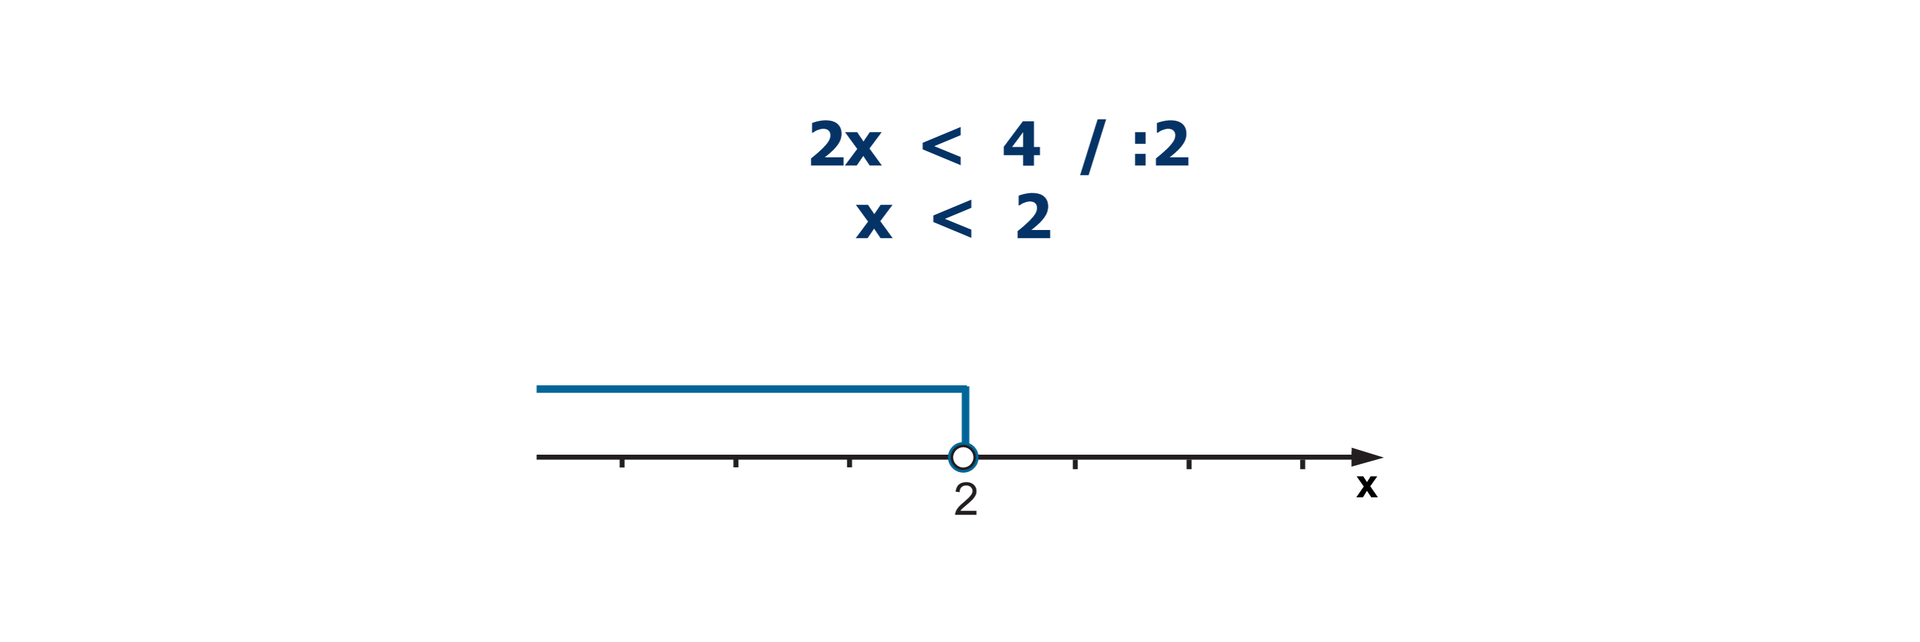 Nierówność: 2x < 4. Nierówność podzielona obustronnie przez 2. x < 2. Na osi liczbowej niezamalowane kółko w punkcie o współrzędnych 2. Zaznaczone wszystkie liczby mniejsze od 2.